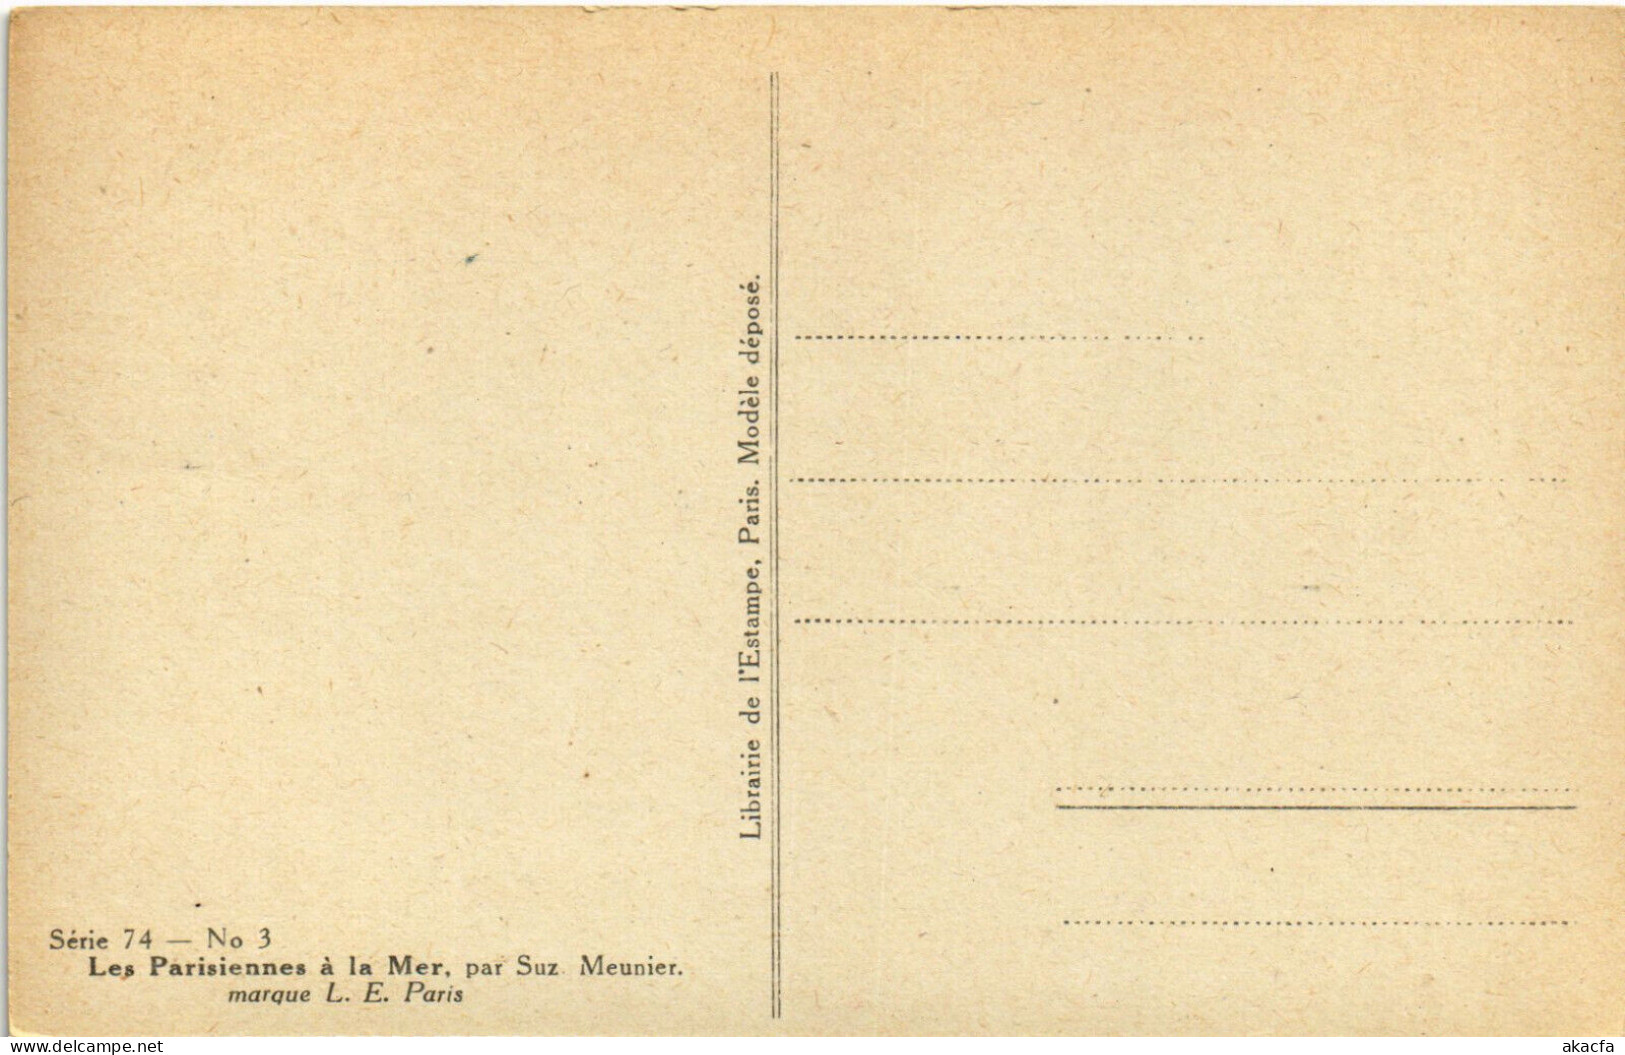 PC ARTIST SIGNED, MEUNIER, LES LARISIENNE A LA MER, Vintage Postcard (b51672) - Meunier, S.